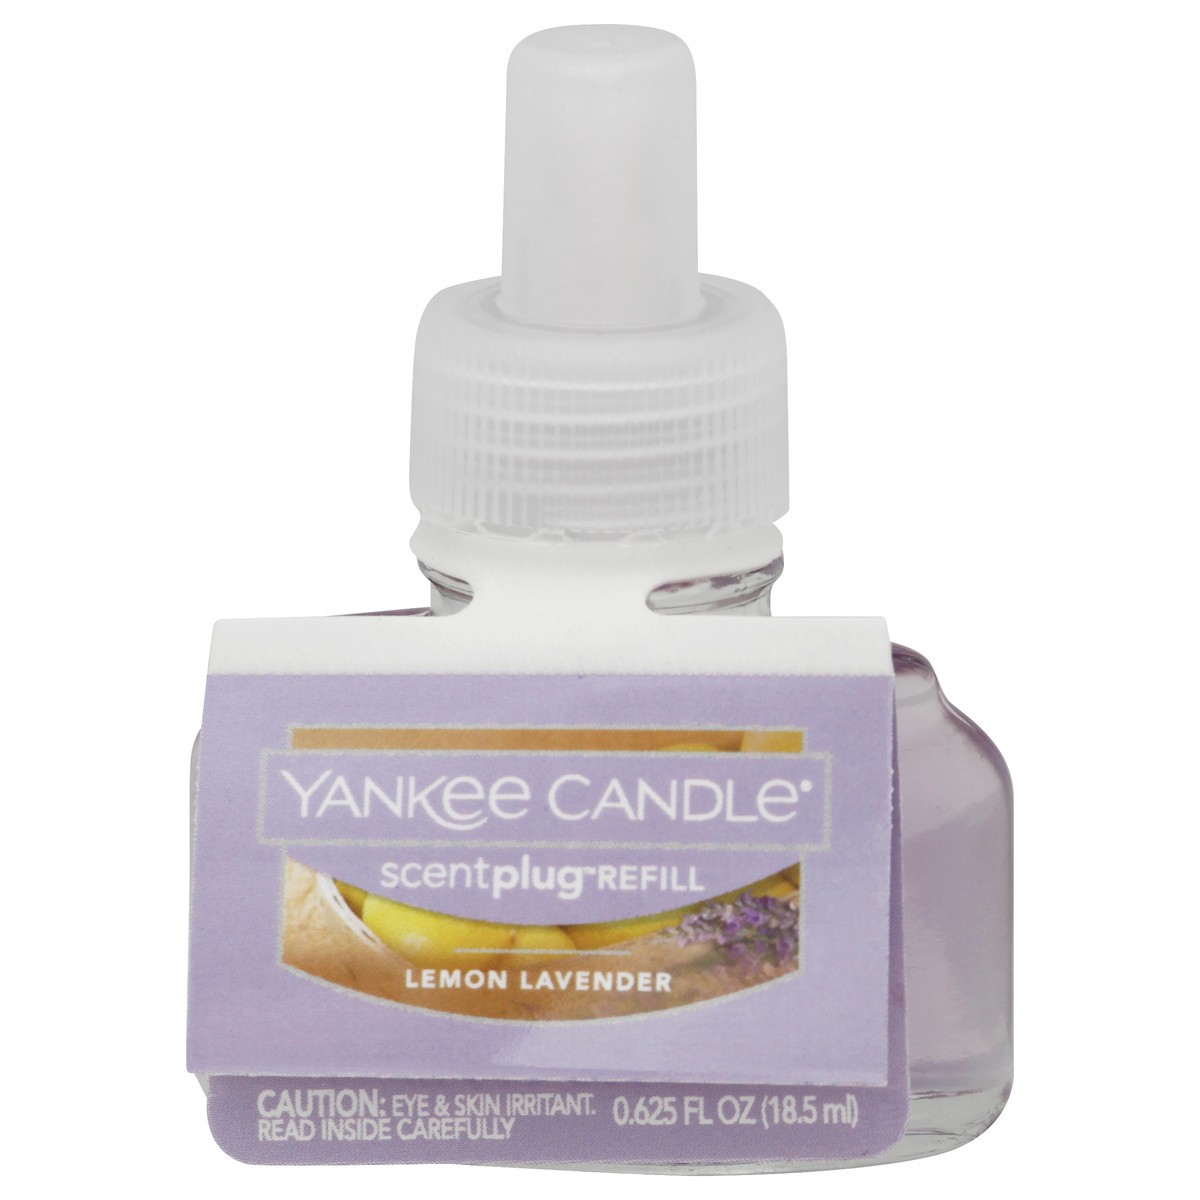 slide 1 of 9, Yankee Candle ScentPlug Oil Refill Lemon Lavender, 0.625 oz